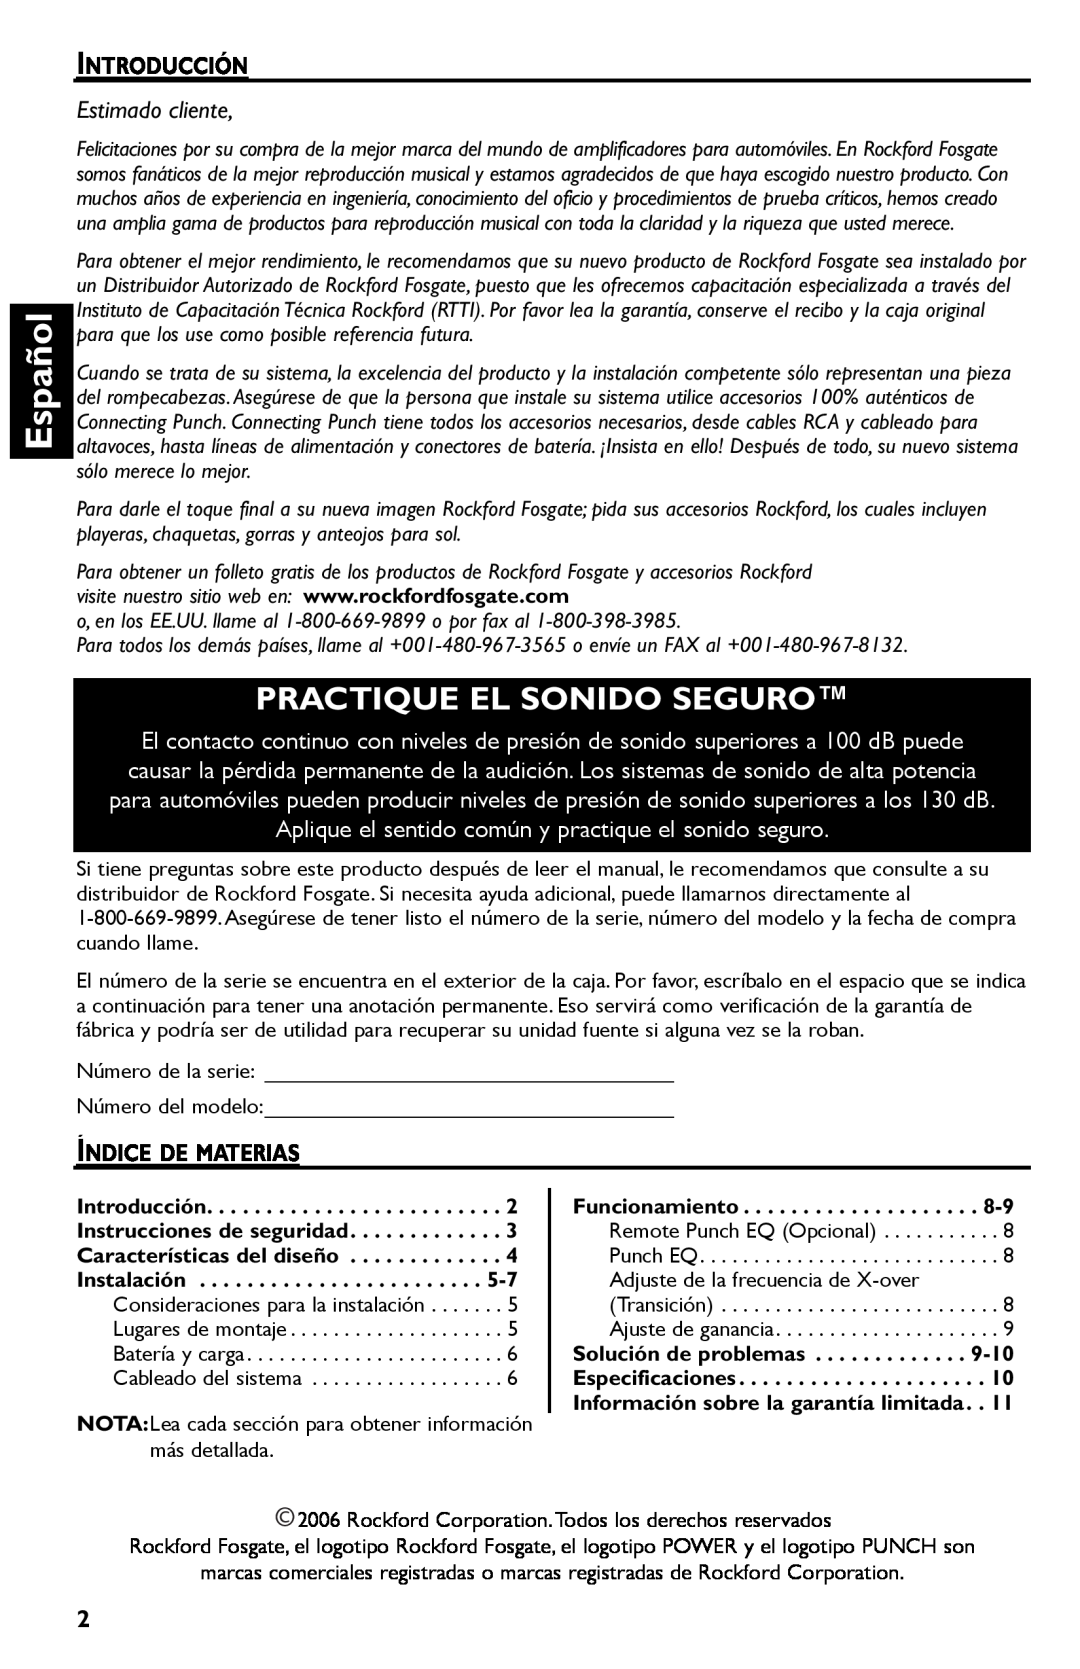 Rockford Fosgate T600-2, T400-2 manual Español, Practique El Sonido Seguro, Estimado cliente 